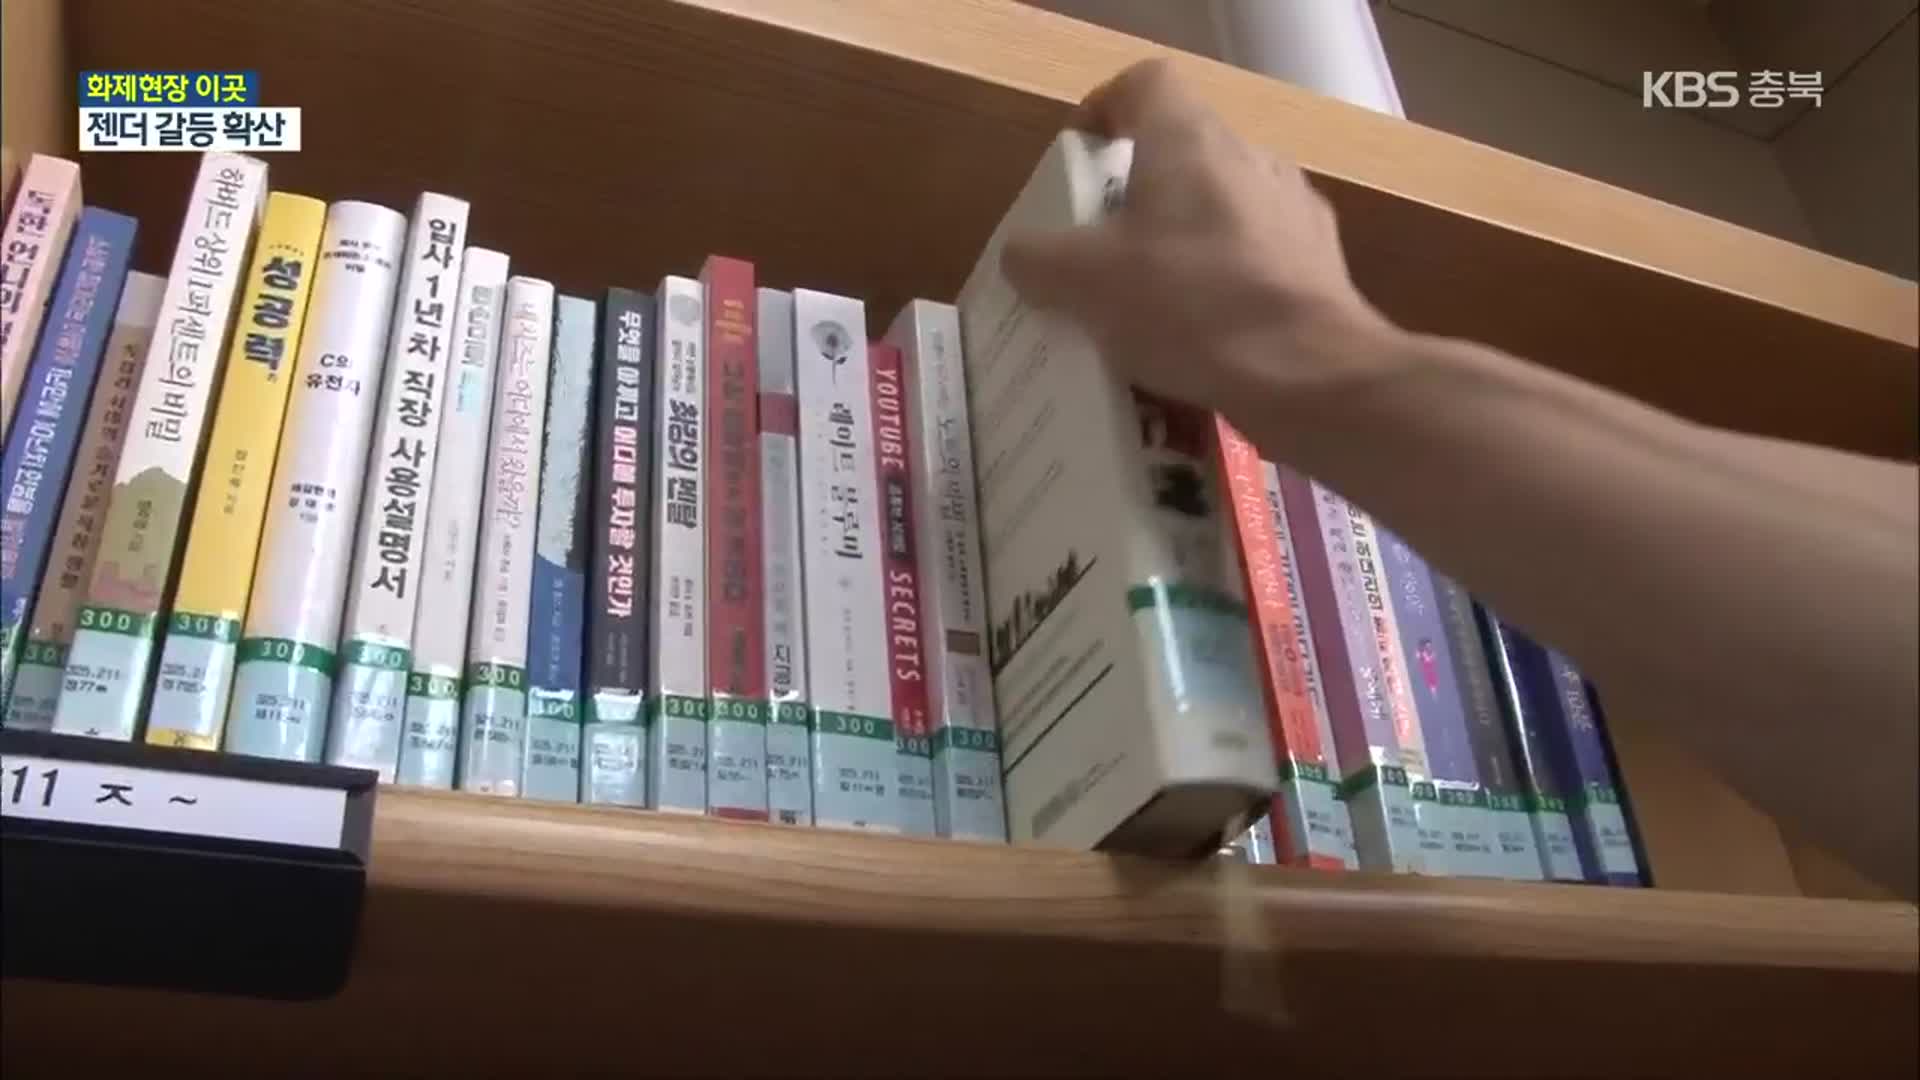 [화제현장 이곳] 제천 여성전용도서관 ‘남성출입’ 허용 논란